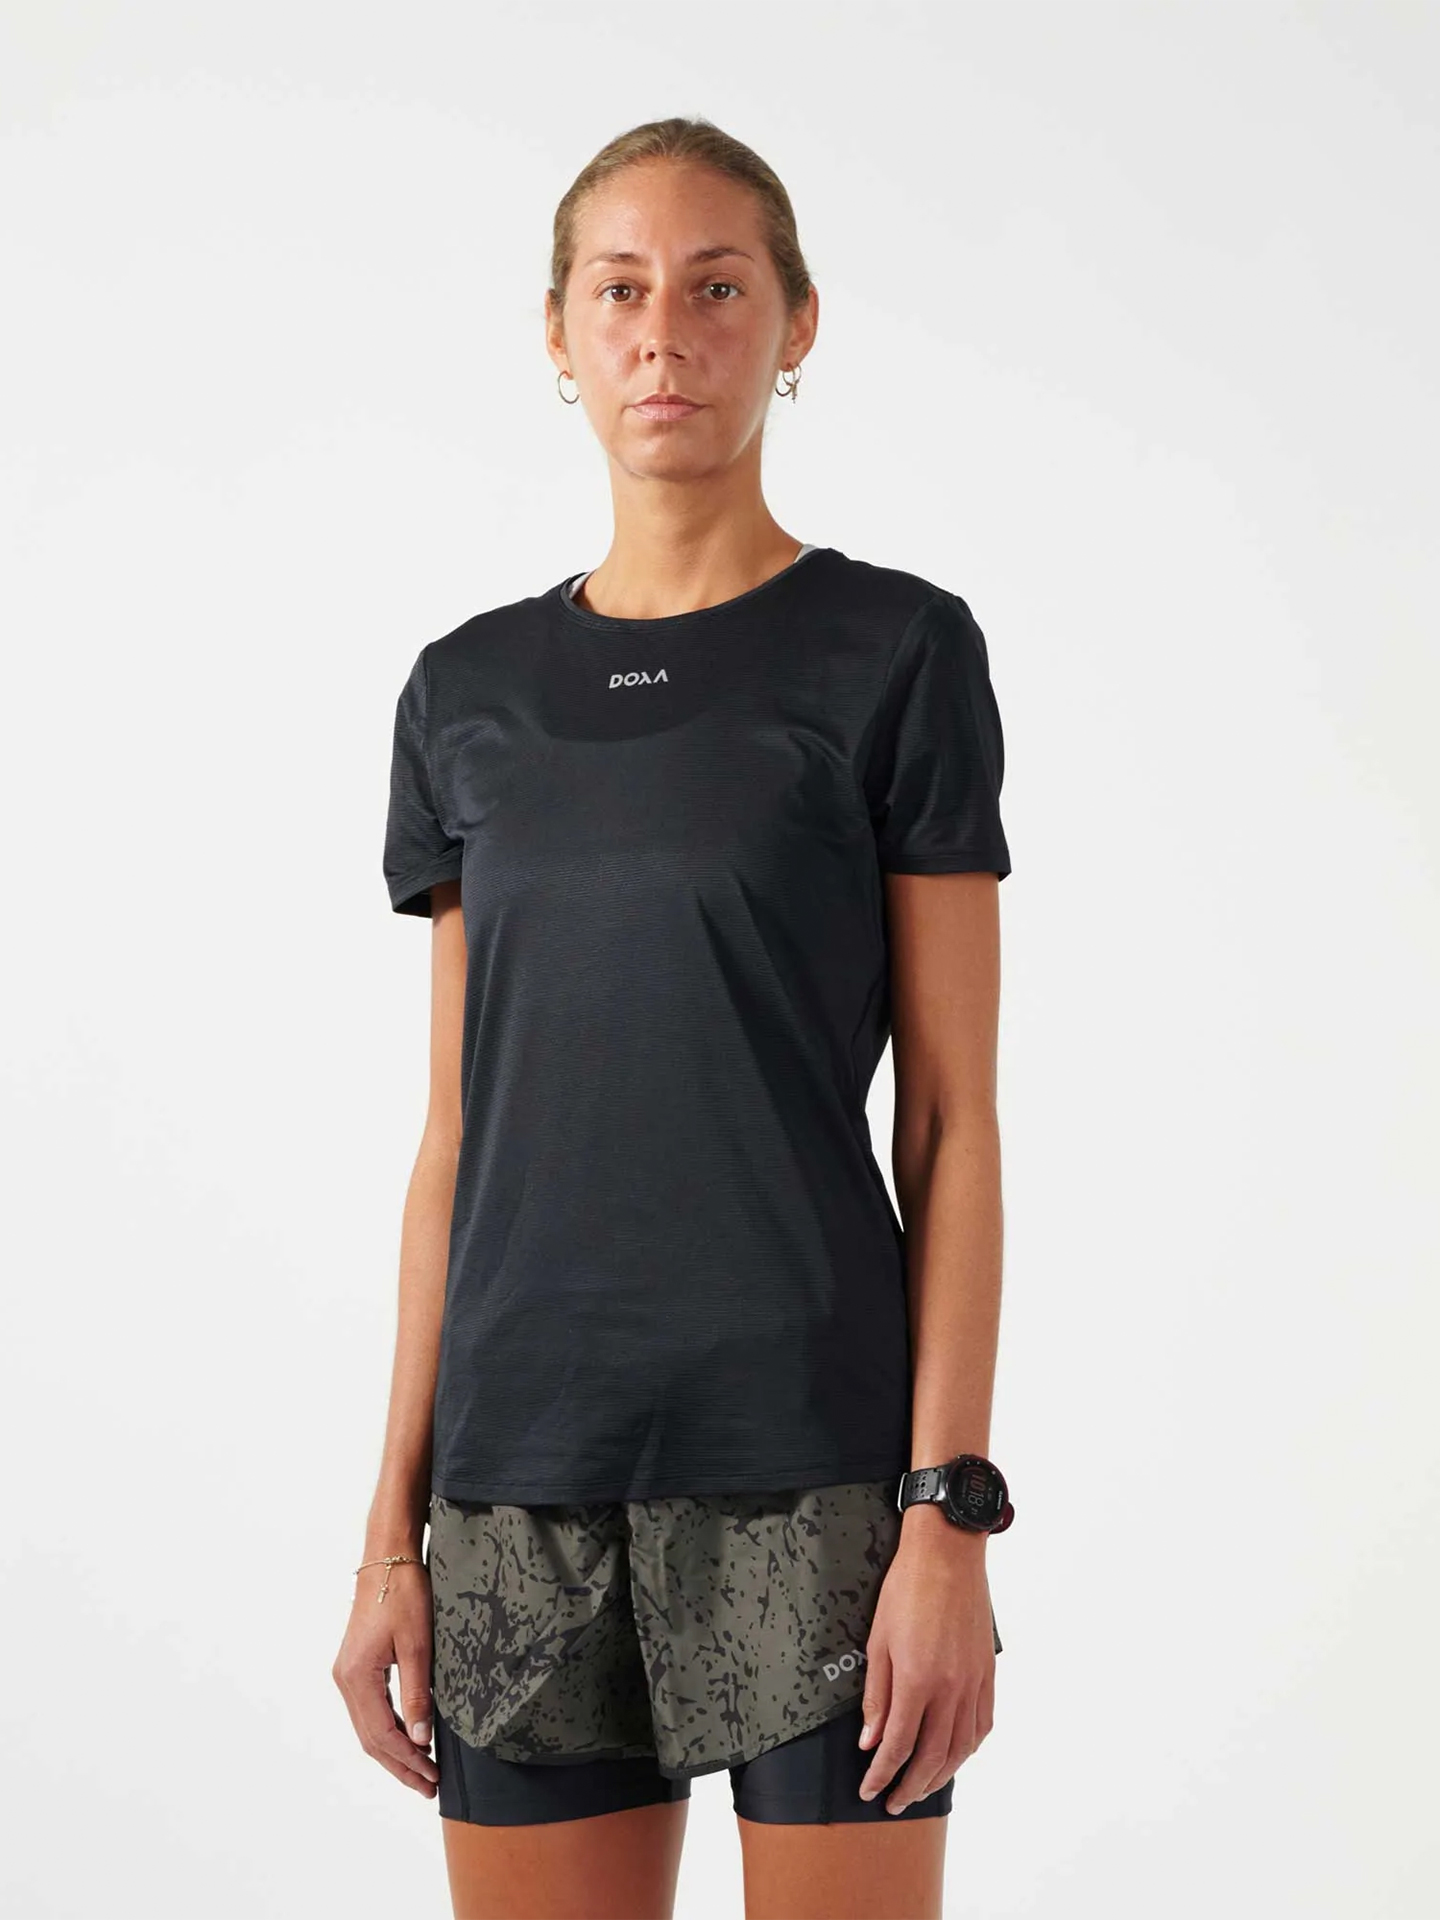 Топ женский Nike SWOOSH BRA PAD - купить в интернет-магазине Odyssey